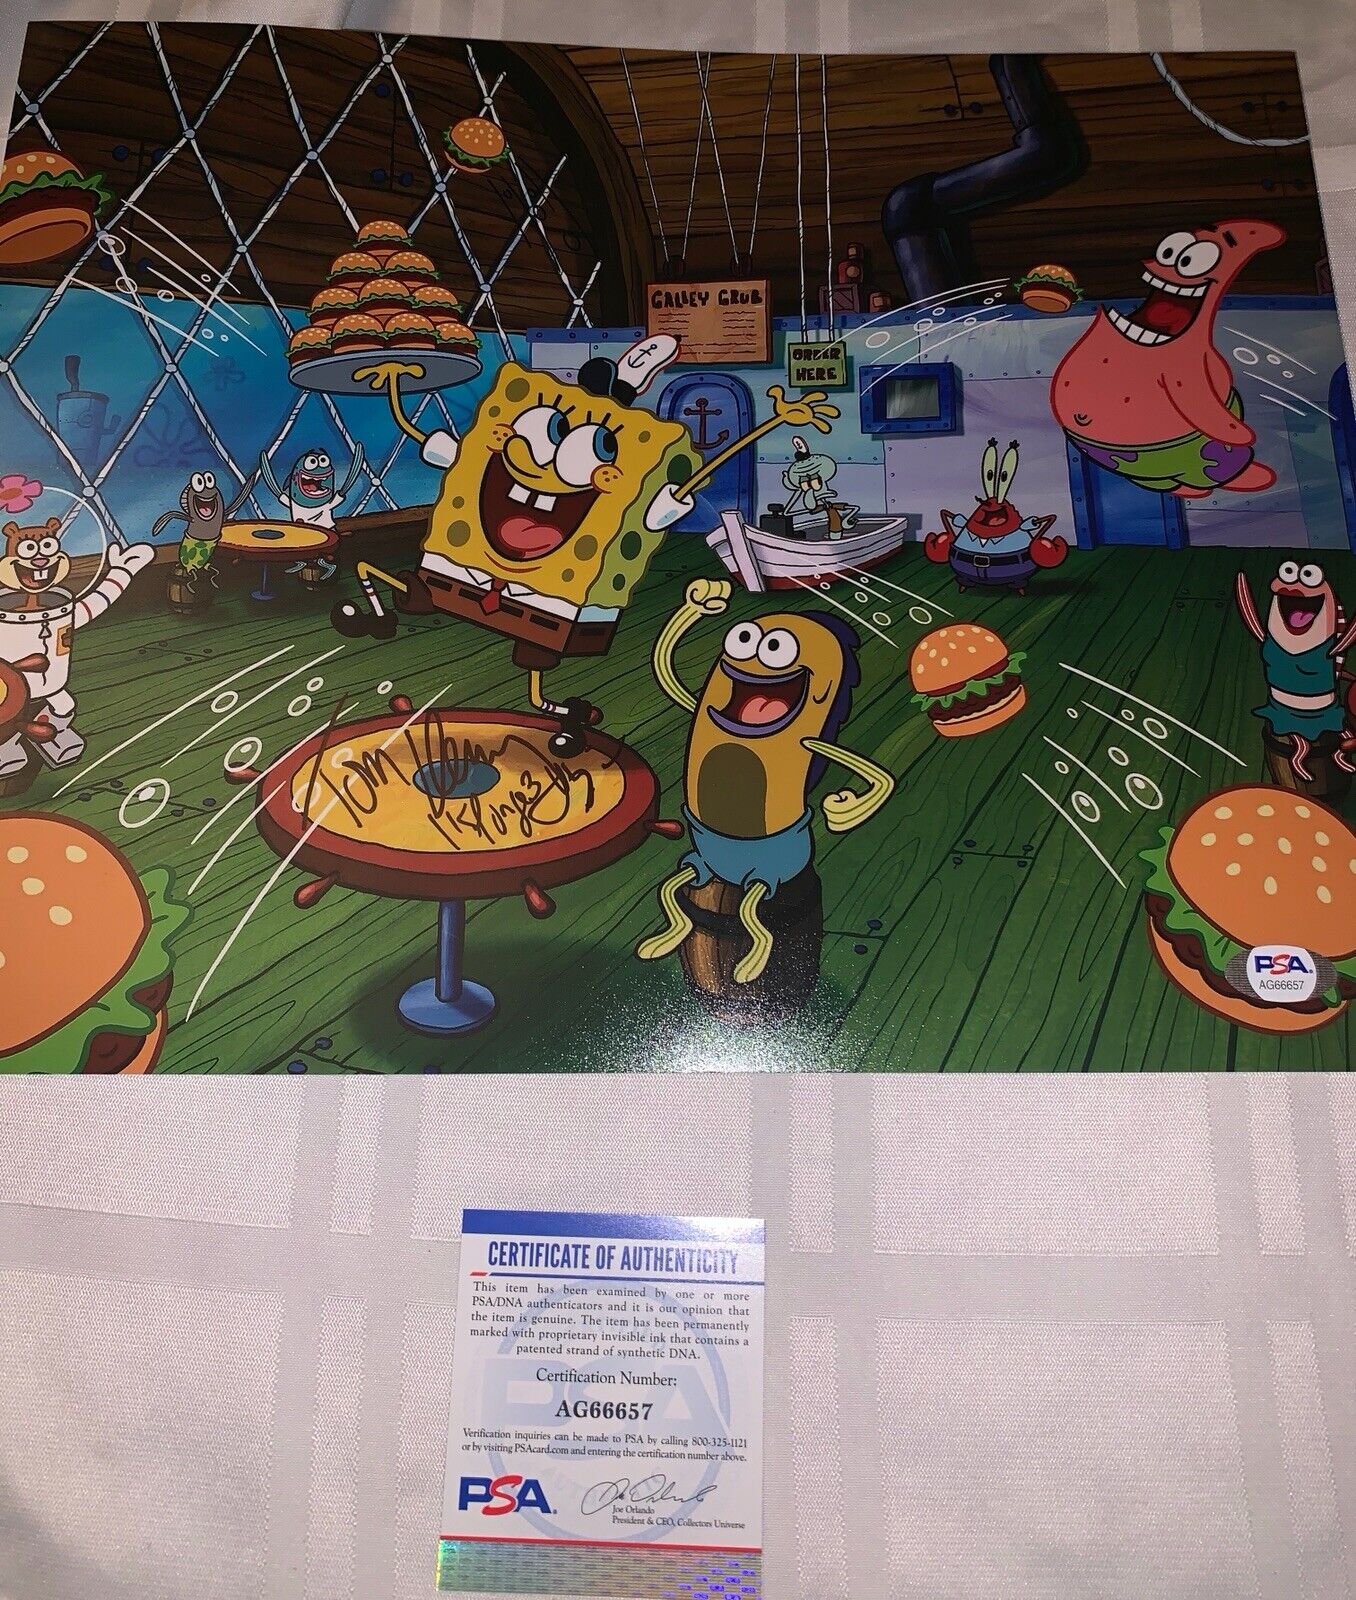 tom kenny signed 8x10 Photo Poster painting Pic Sponge Bob Square Pants Psa/dna Coa